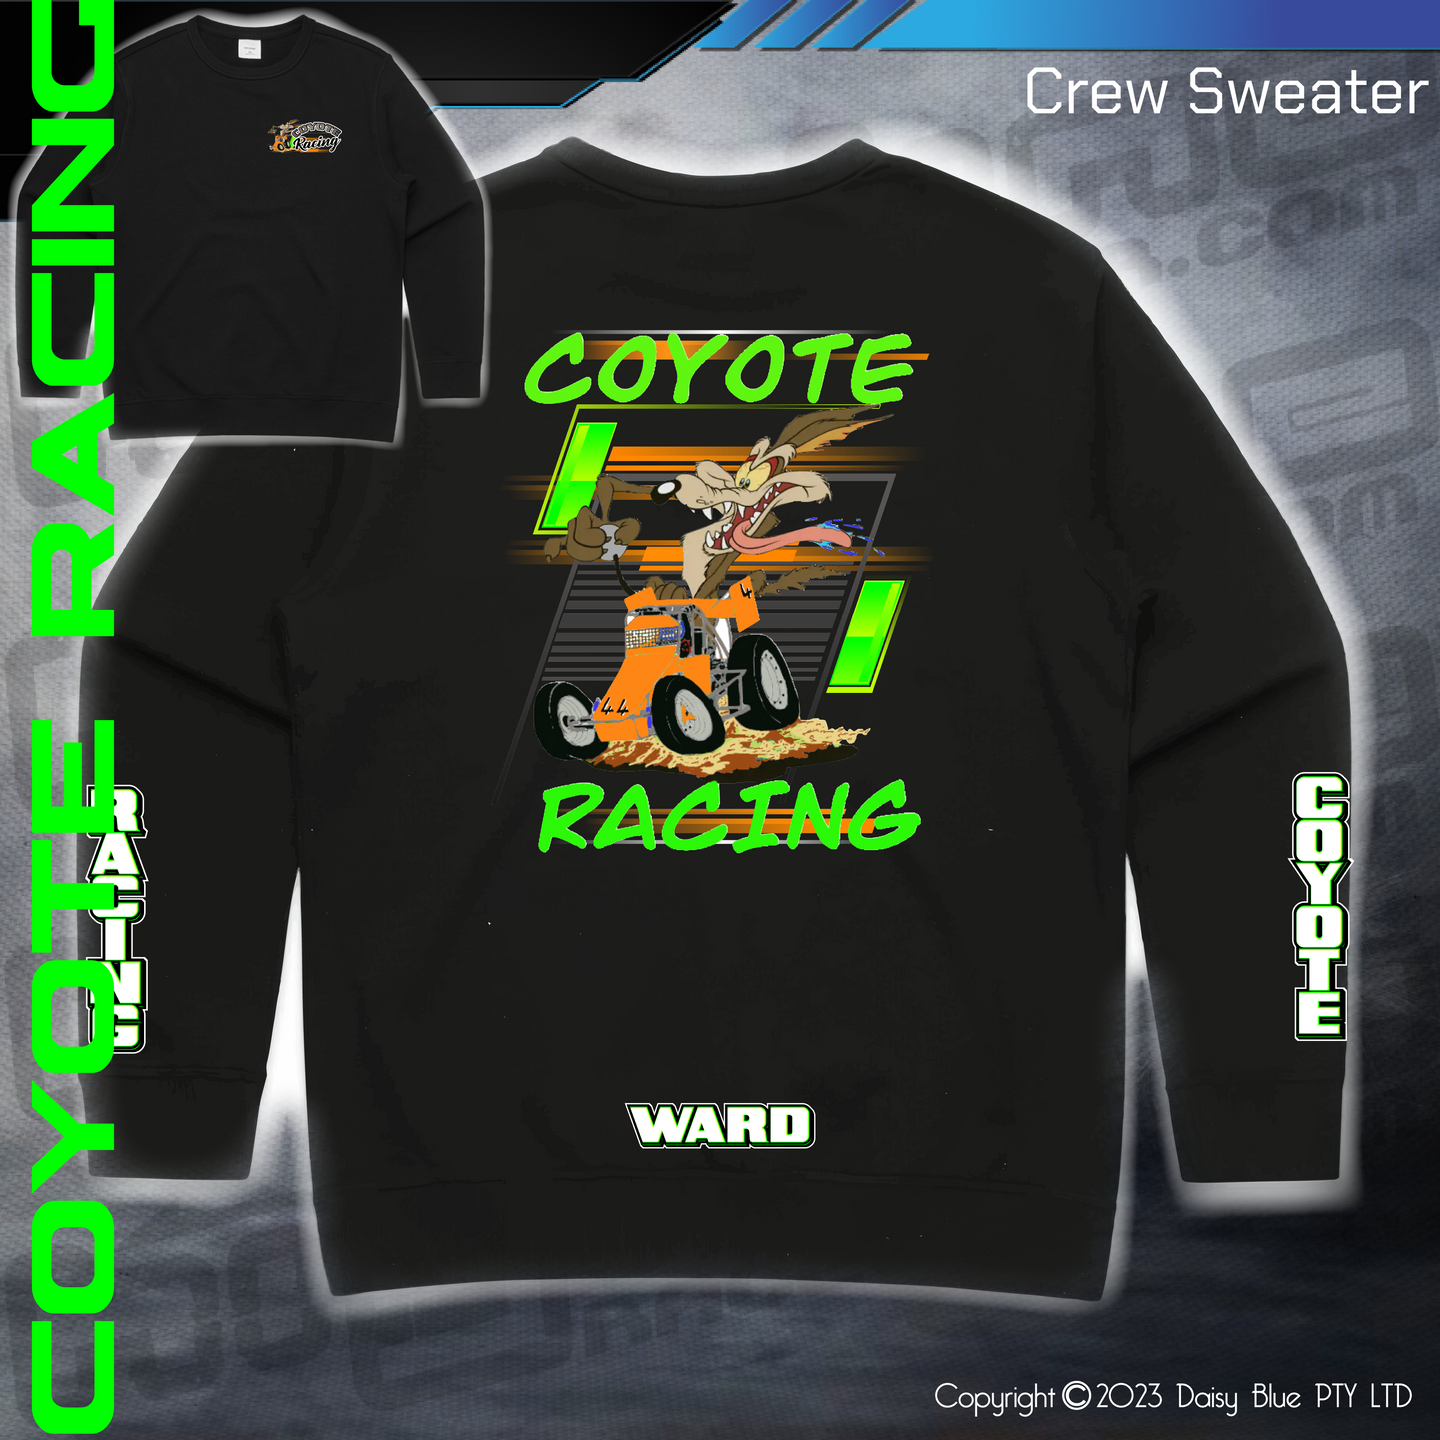 Crew Sweater - Coyote Racing